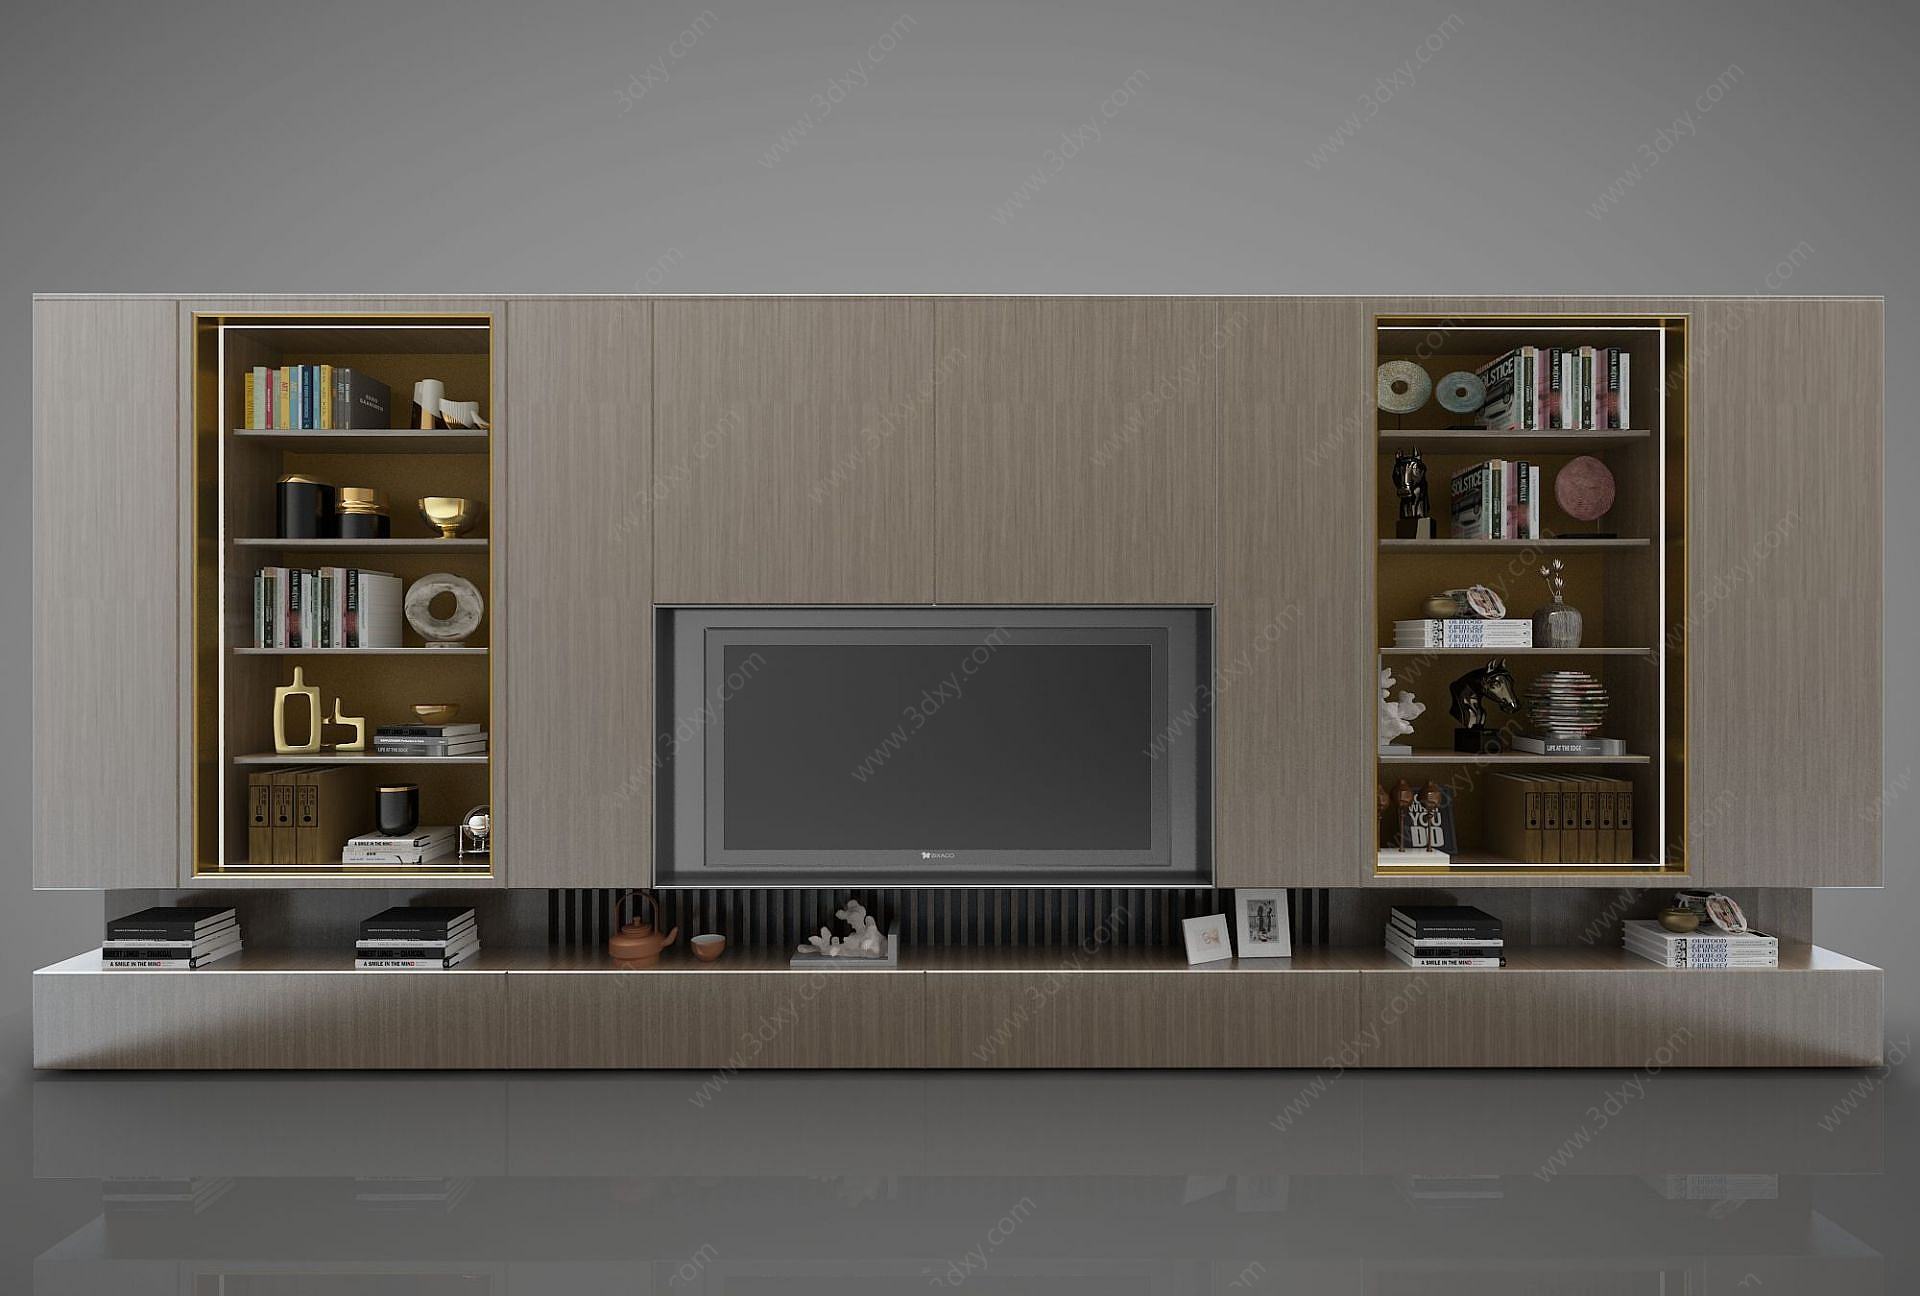 关键词:3d现代模型3d风格模型3d电视柜模型3d电视背景墙模型 分享到